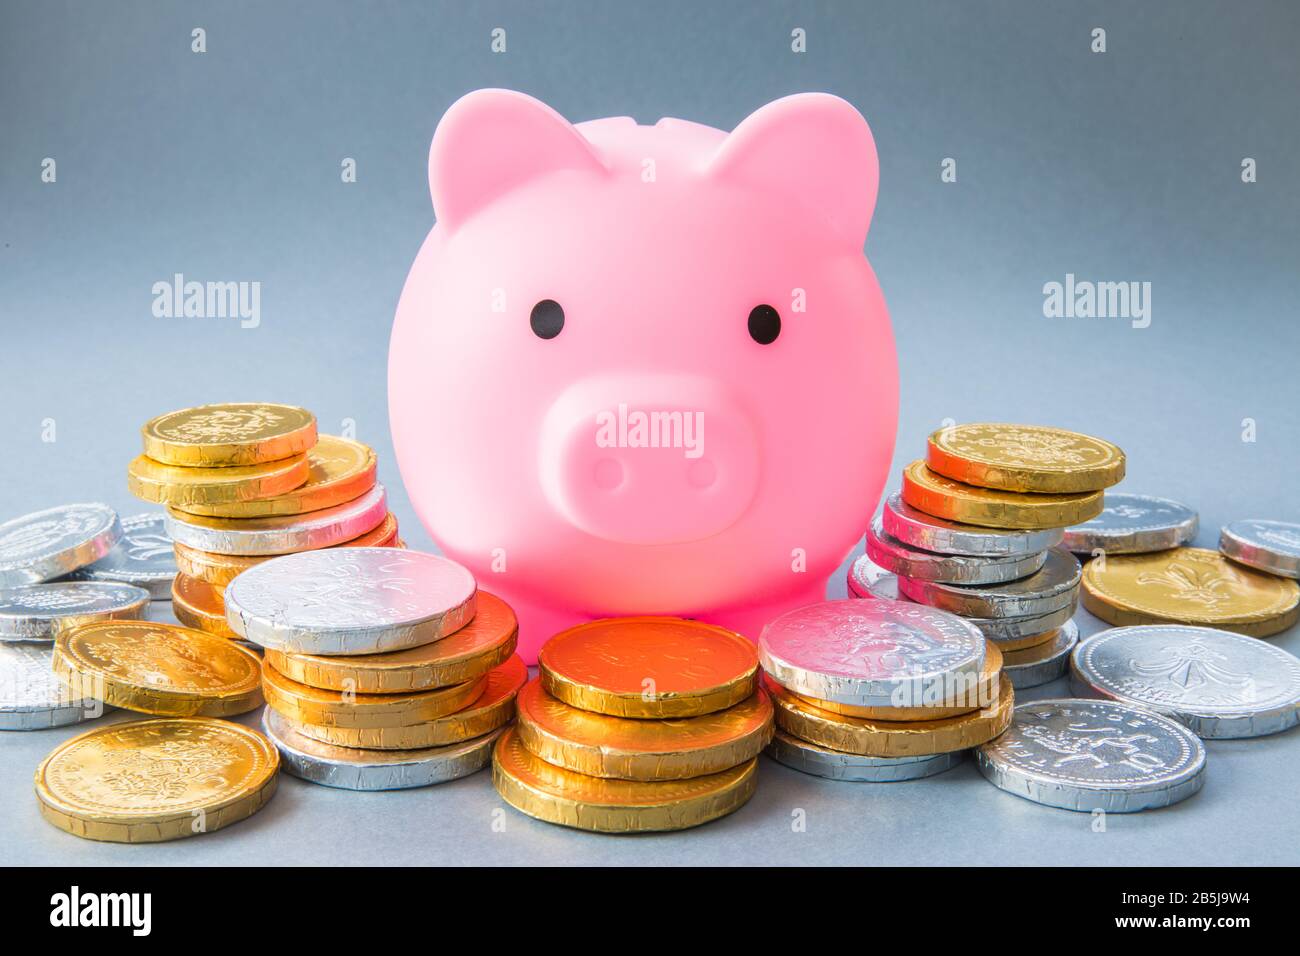 Ein Konzeptbild einer großen pinkfarbenen Schweinebank, umgeben von Bargeld, Münzen und Geld, die Ersparnisse, Bankgeschäfte und Unterricht für Kinder darstellen, um für ihr Geld zu sparen Stockfoto